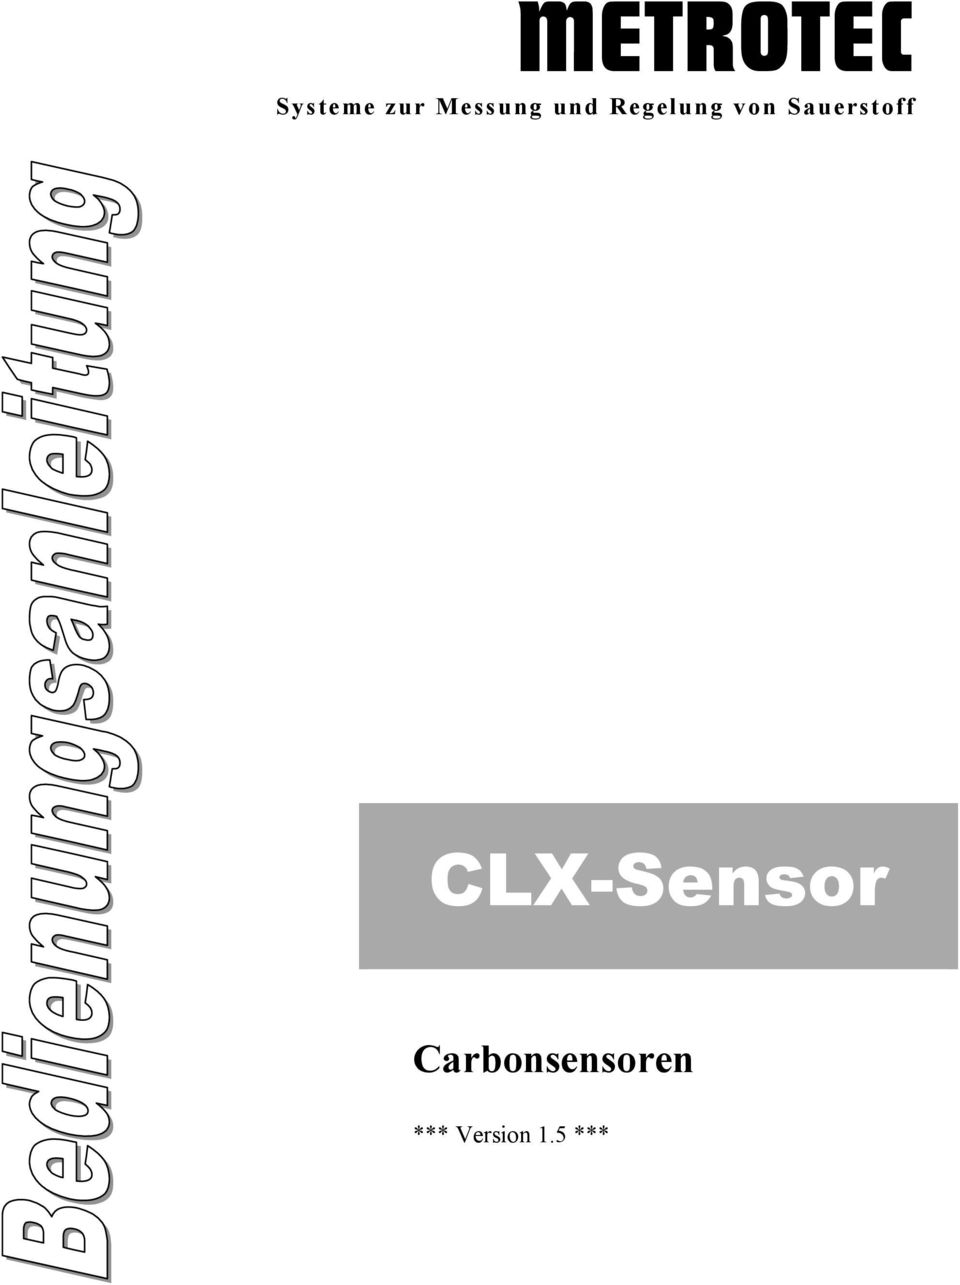 CLX-Sensor